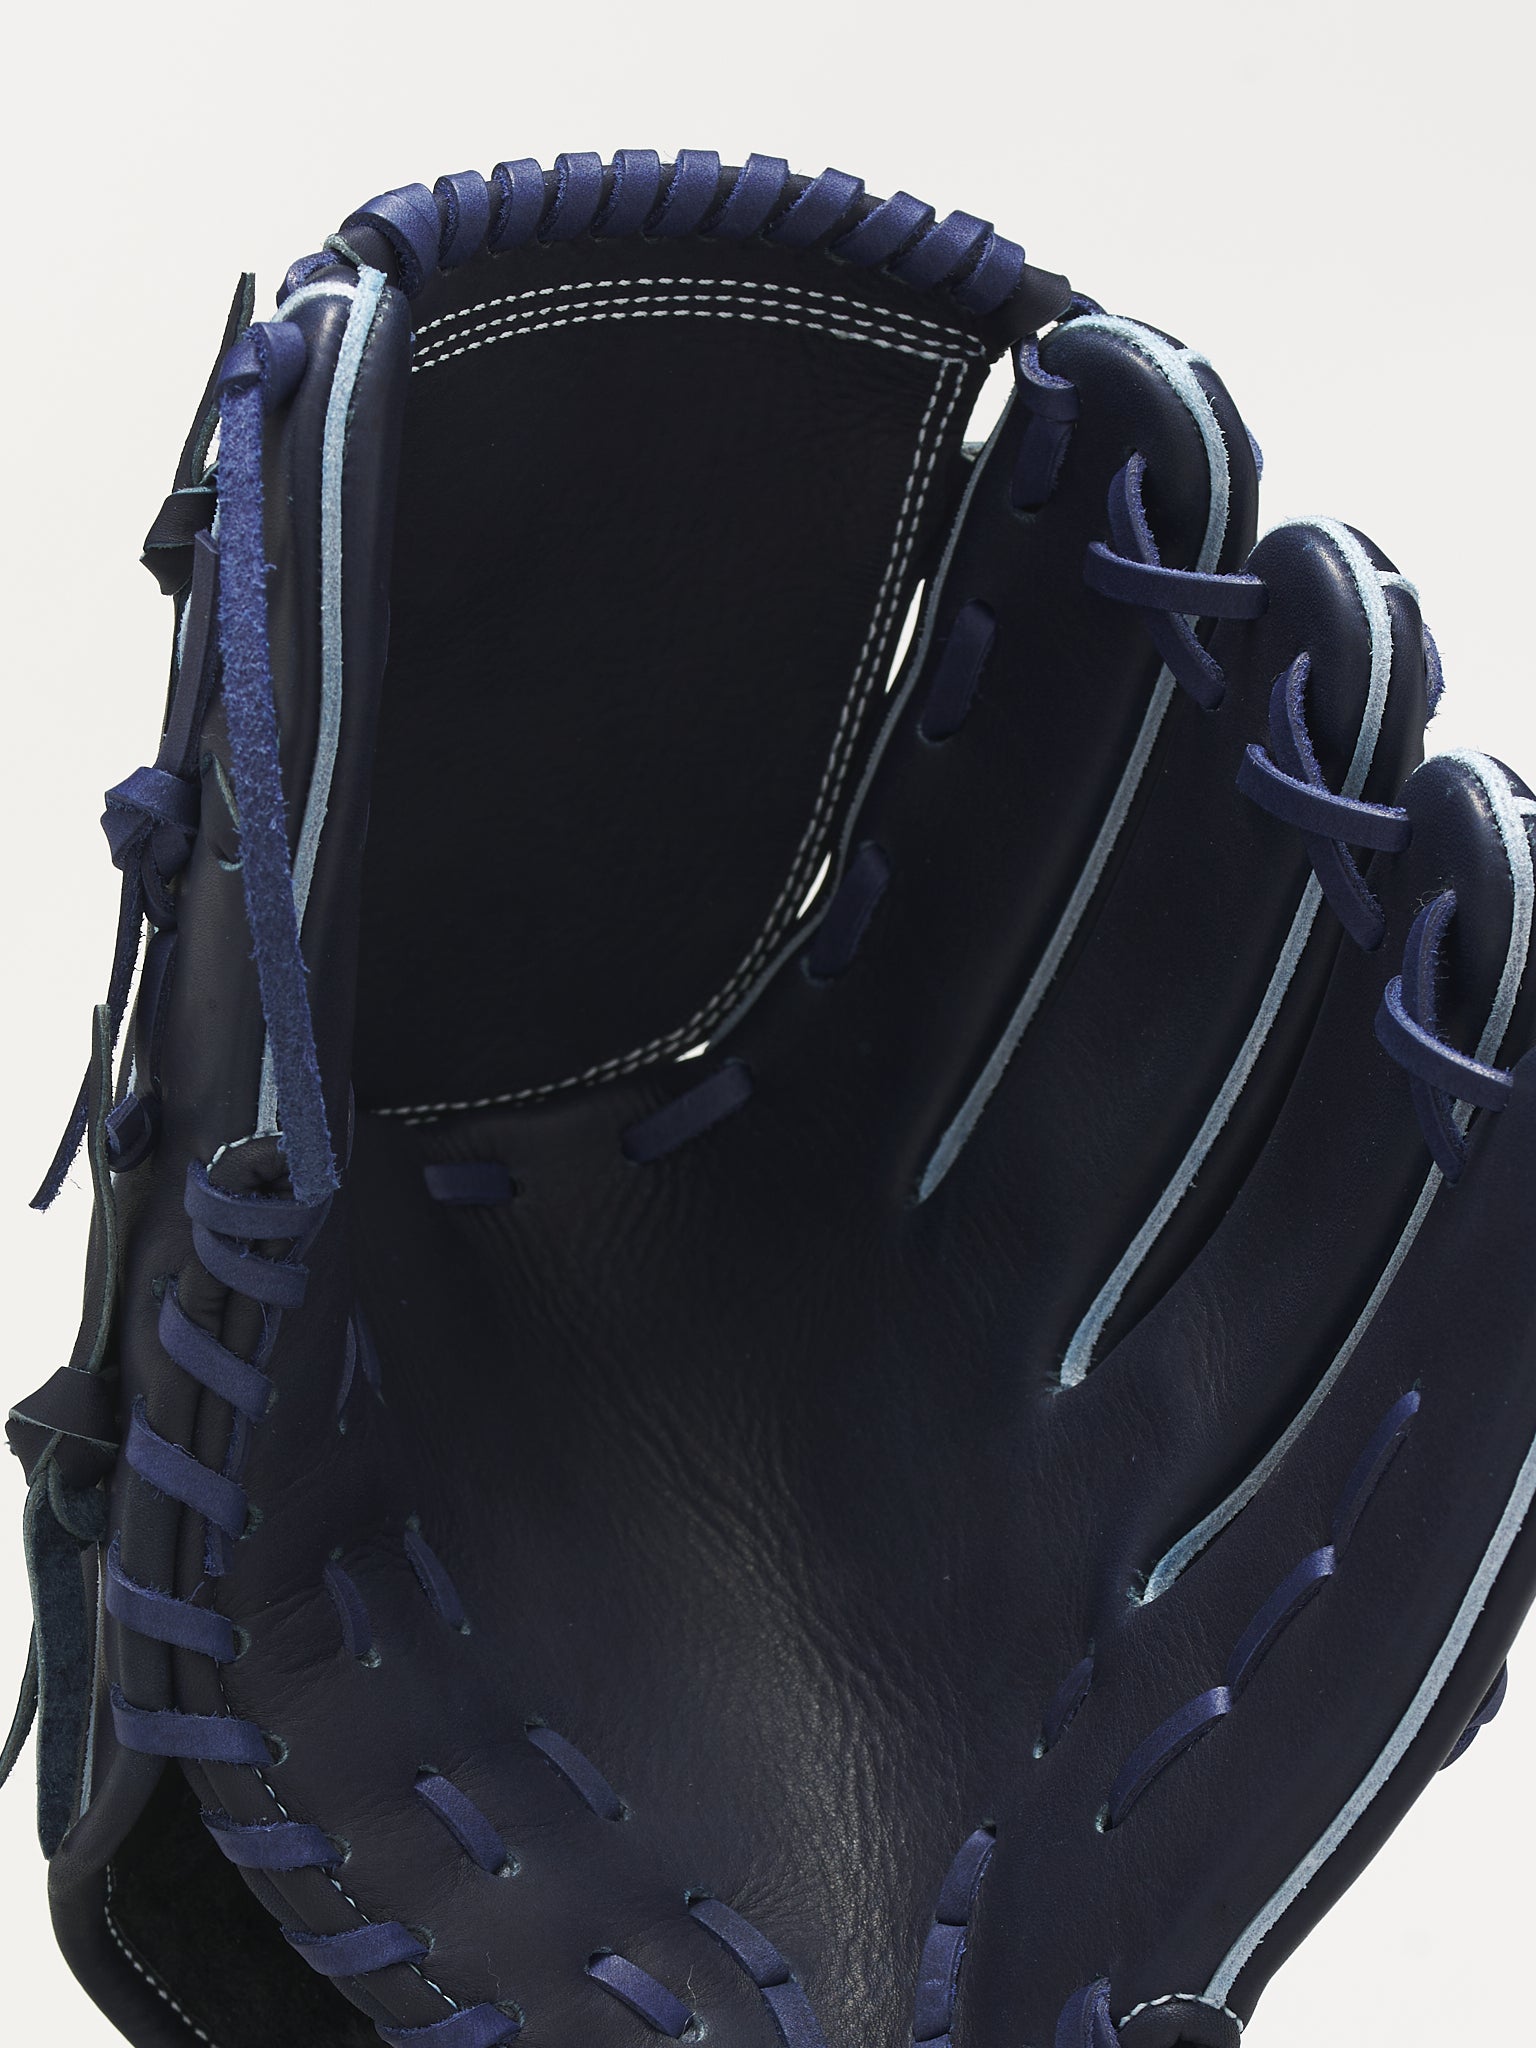 Baseball Glove (BASEBALL-GLOVES-NAVY)